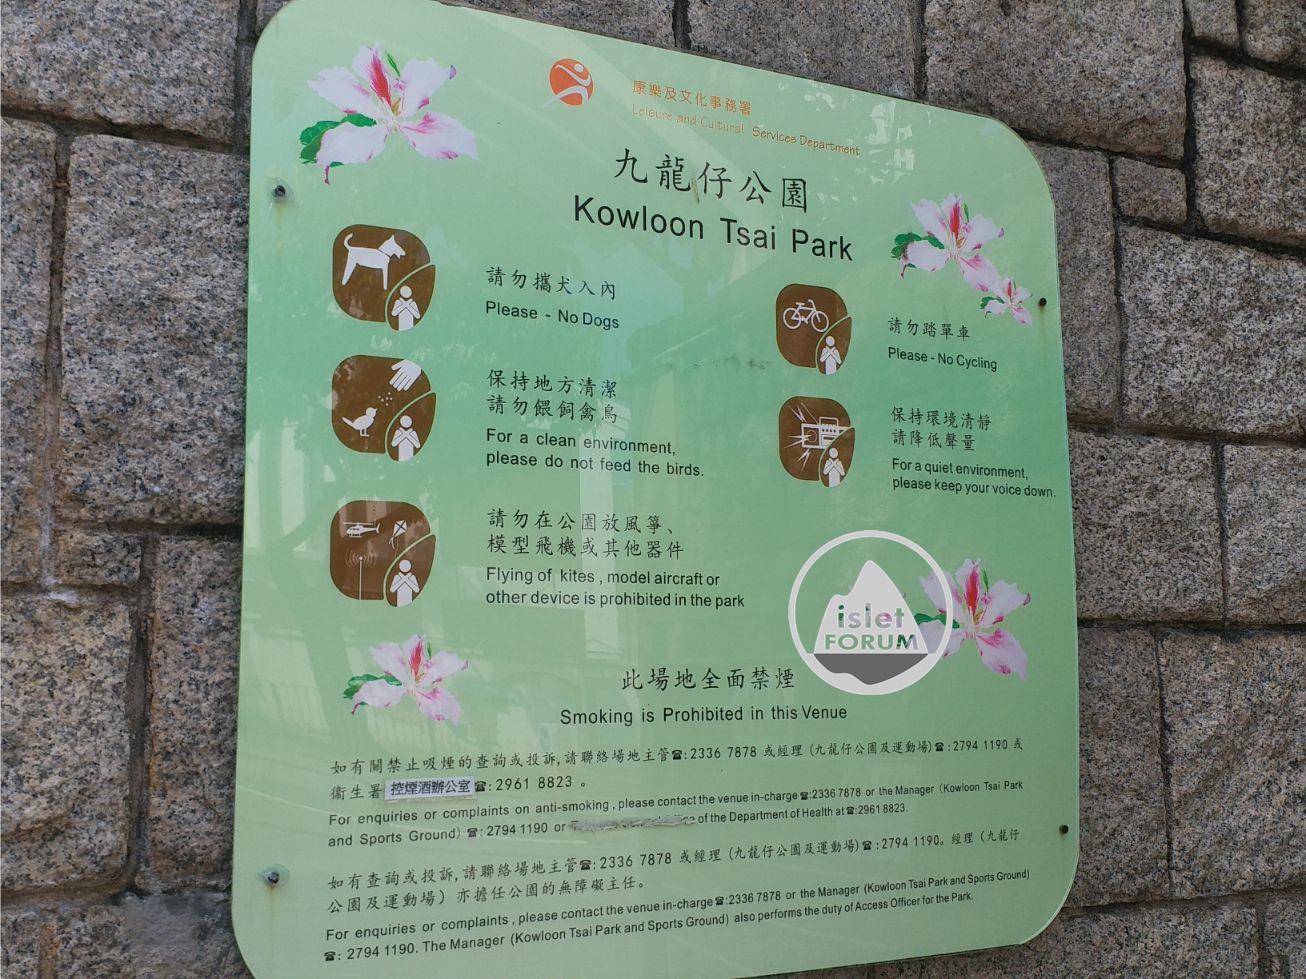 九龍仔公園kowloon tsai park (3).jpg